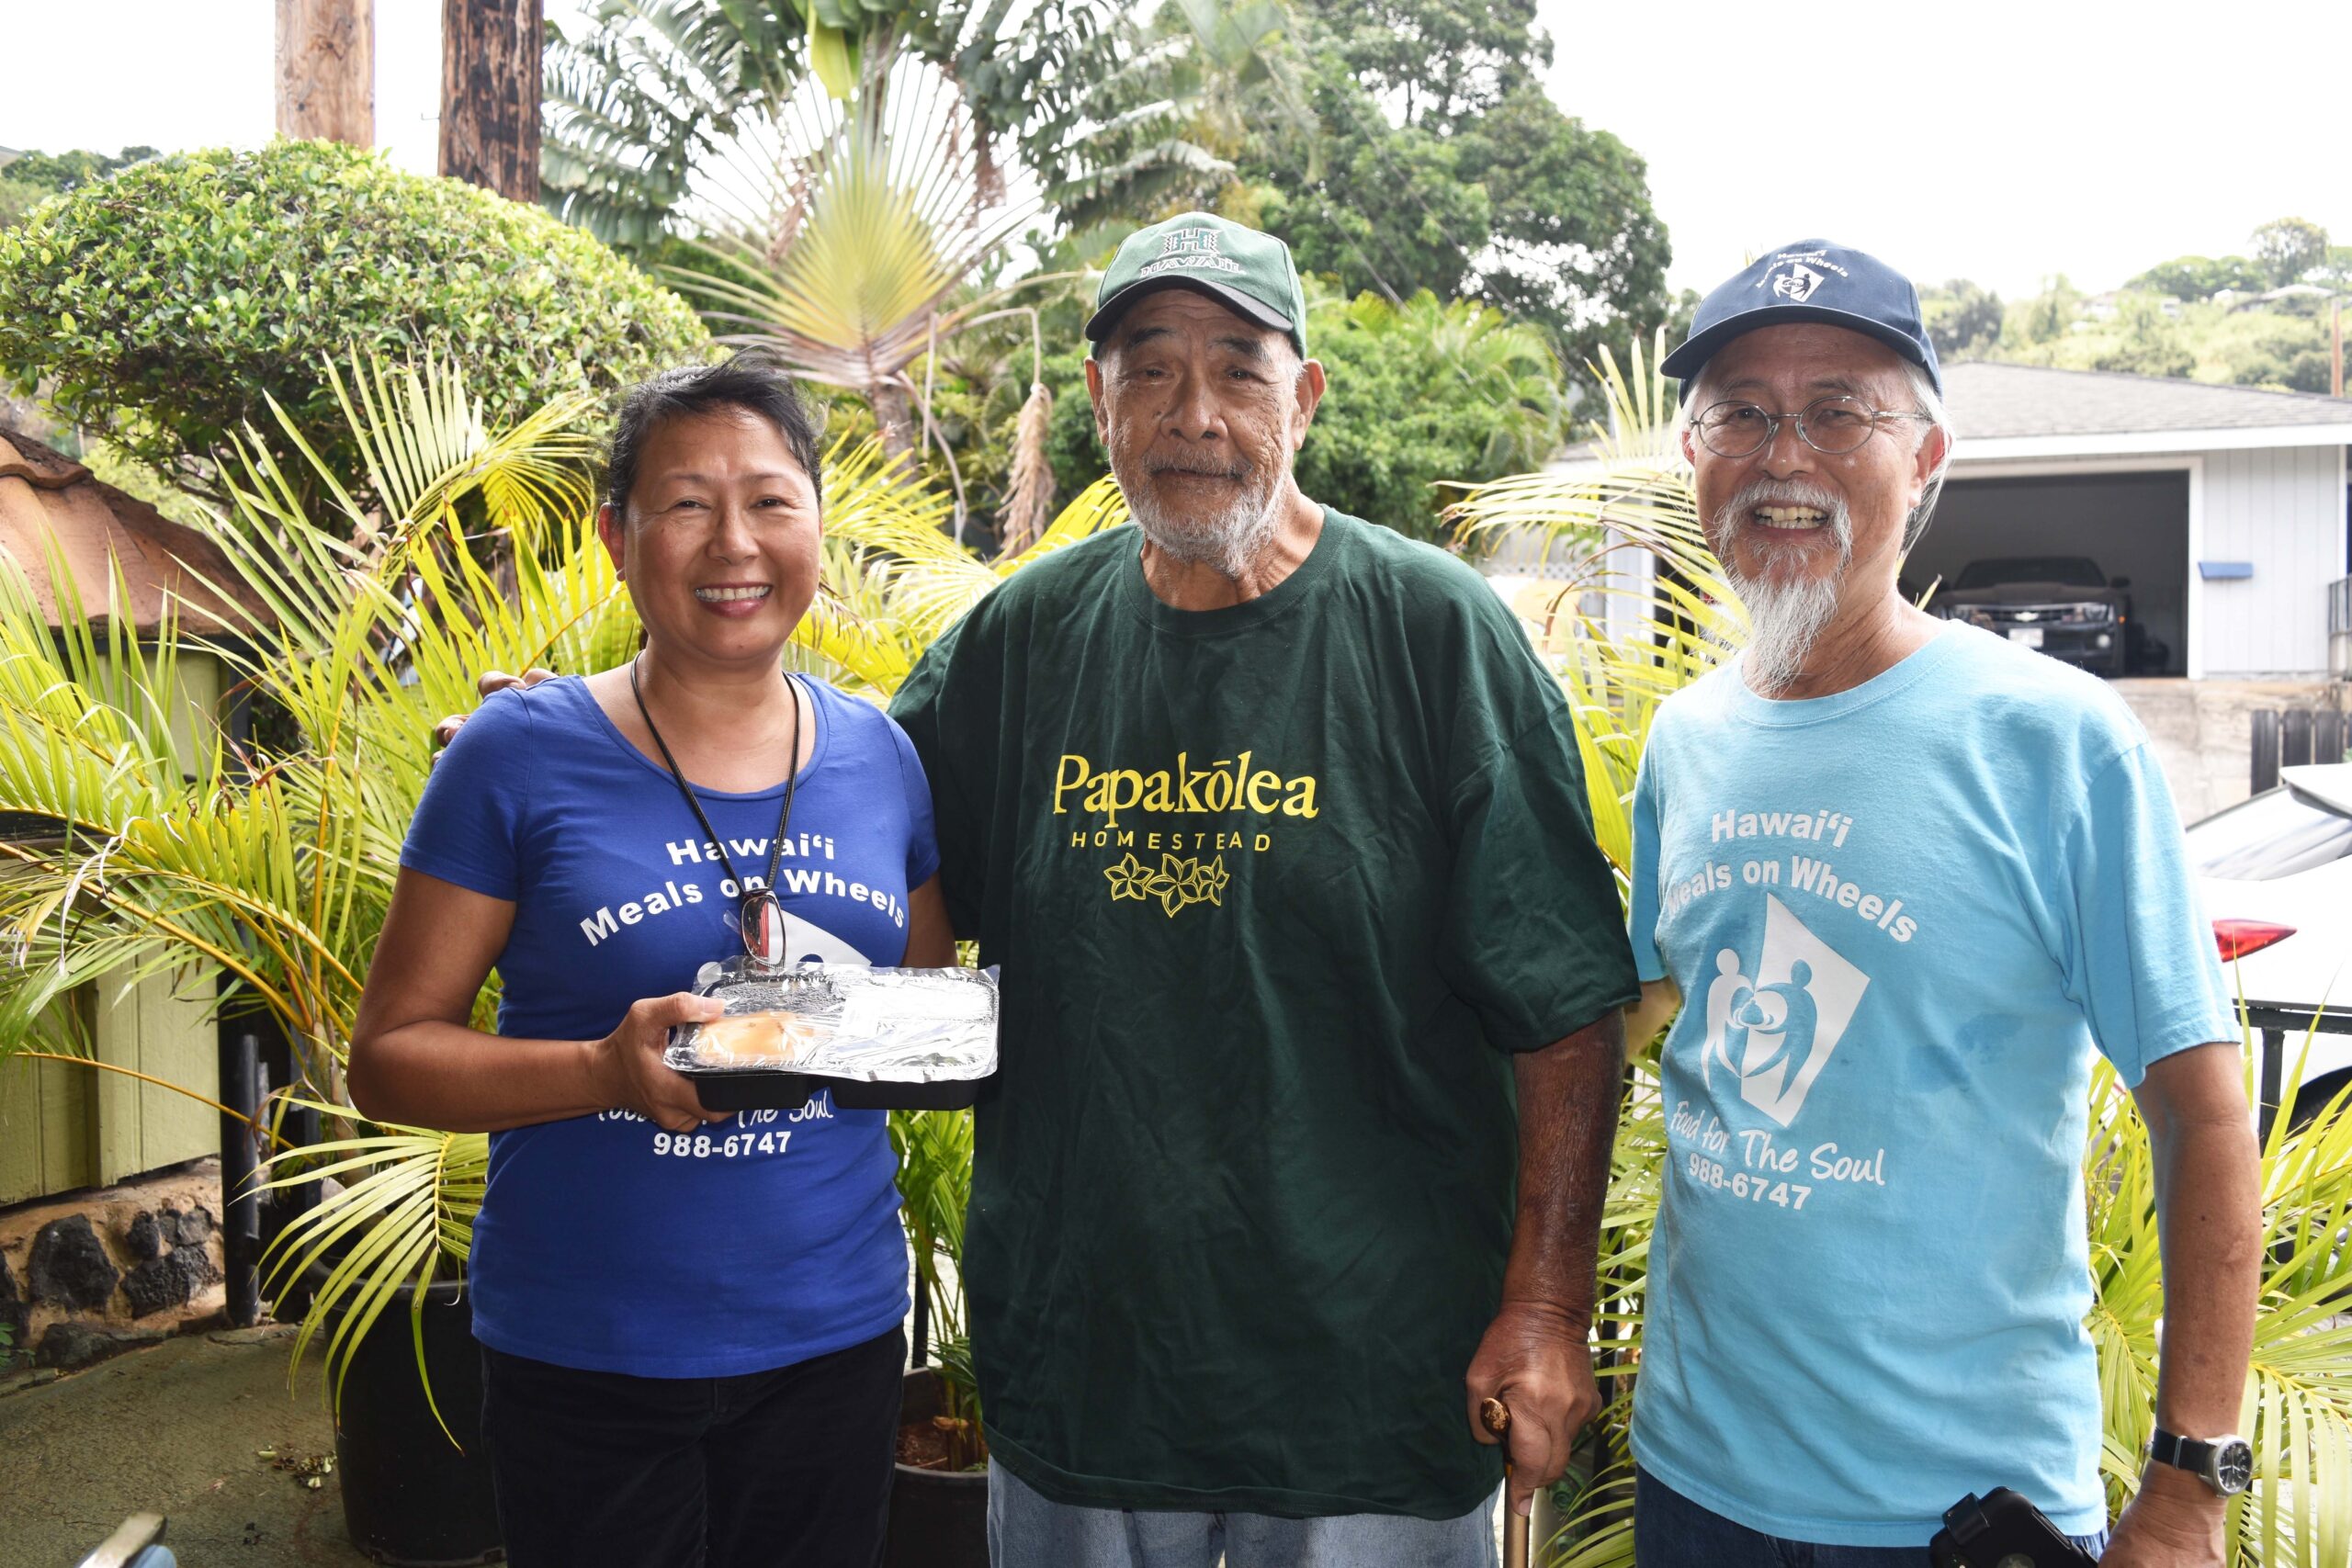 Hawaii Gives: Hawaii Meals on Wheels